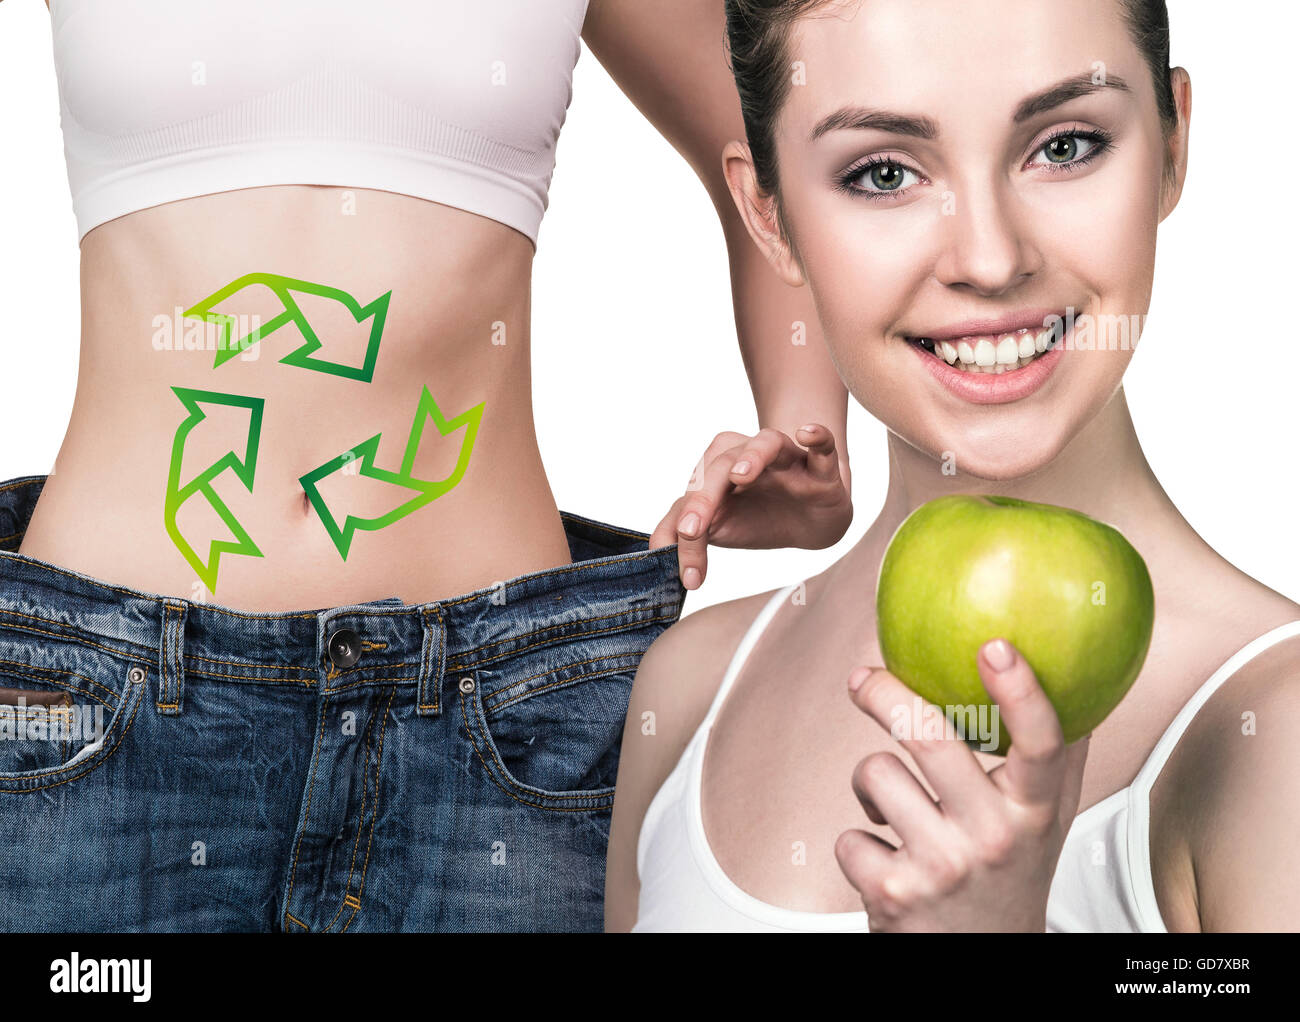 La donna mostra i risultati di una dieta che indossa jeans grandi Foto Stock